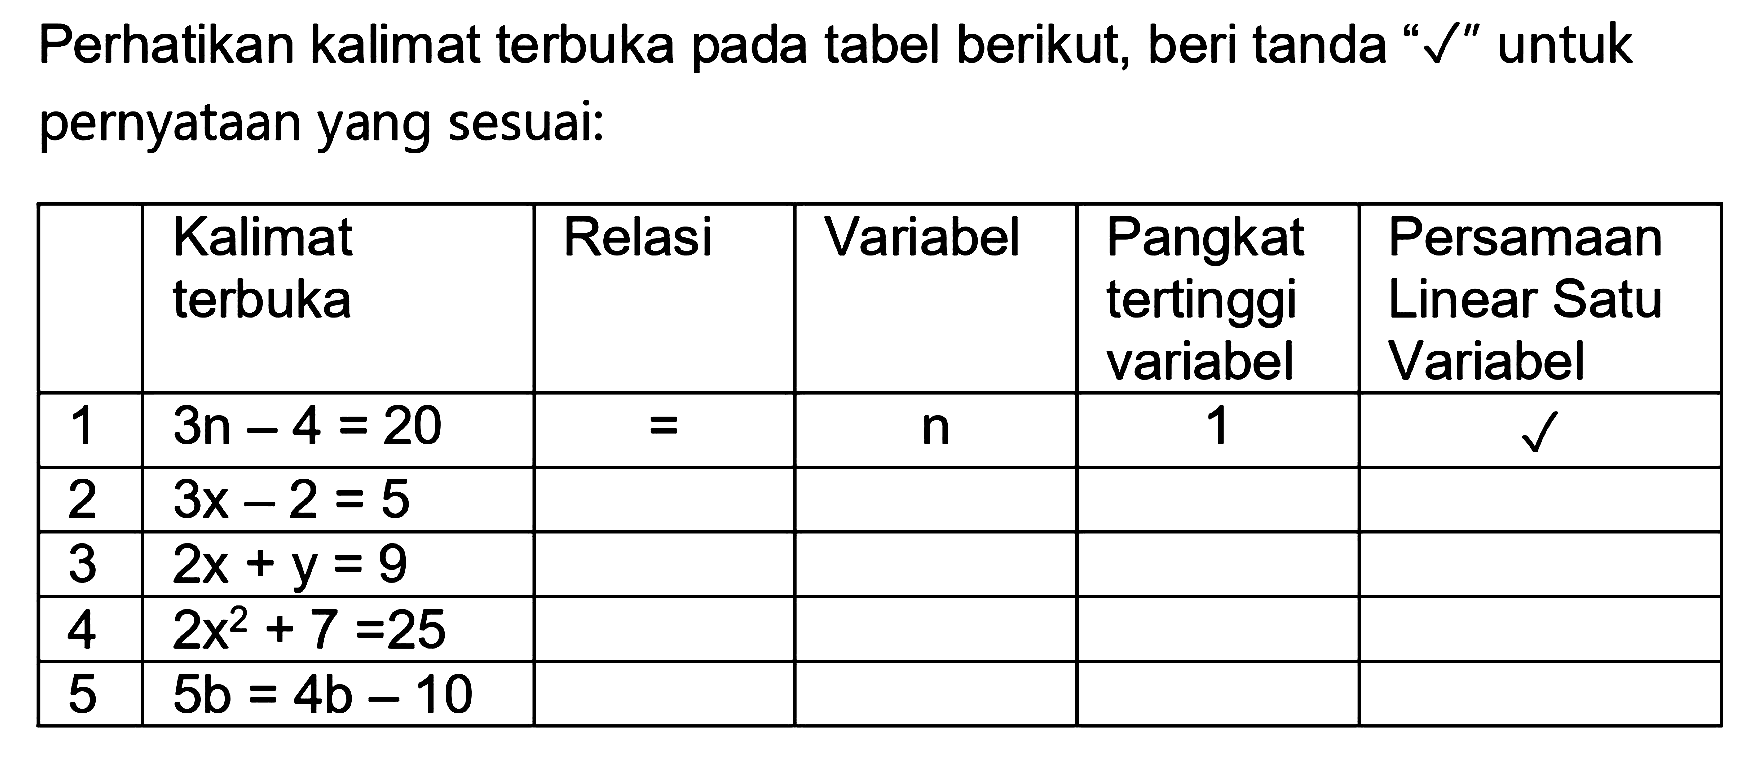 Perhatikan kalimat terbuka pada tabel berikut, beri tanda "  checkmark  " untuk pernyataan yang sesuai:

  Kalimat terbuka  Relasi  Variabel  Pangkat tertinggi variabel  Persamaan Linear Satu Variabel 
 1   3 n-4=20    =    n   1   checkmark  
 2   3 x-2=5      
 3   2 x+y=9      
 4   2 x^(2)+7=25      
 5   5 ~b=4 ~b-10      

